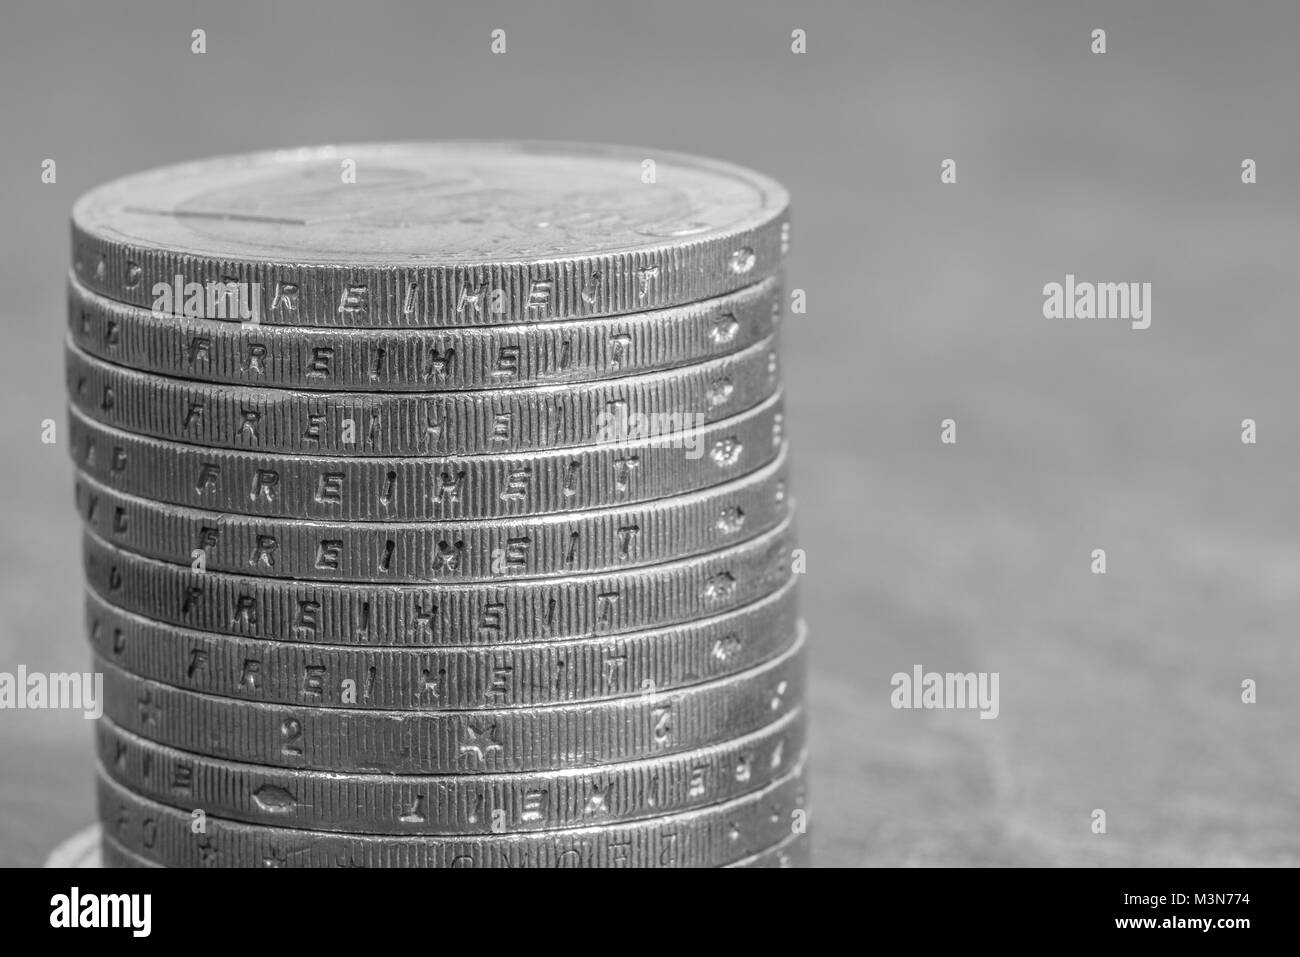 Les pièces en euros empilés avec le mot allemand - Liberté Banque D'Images